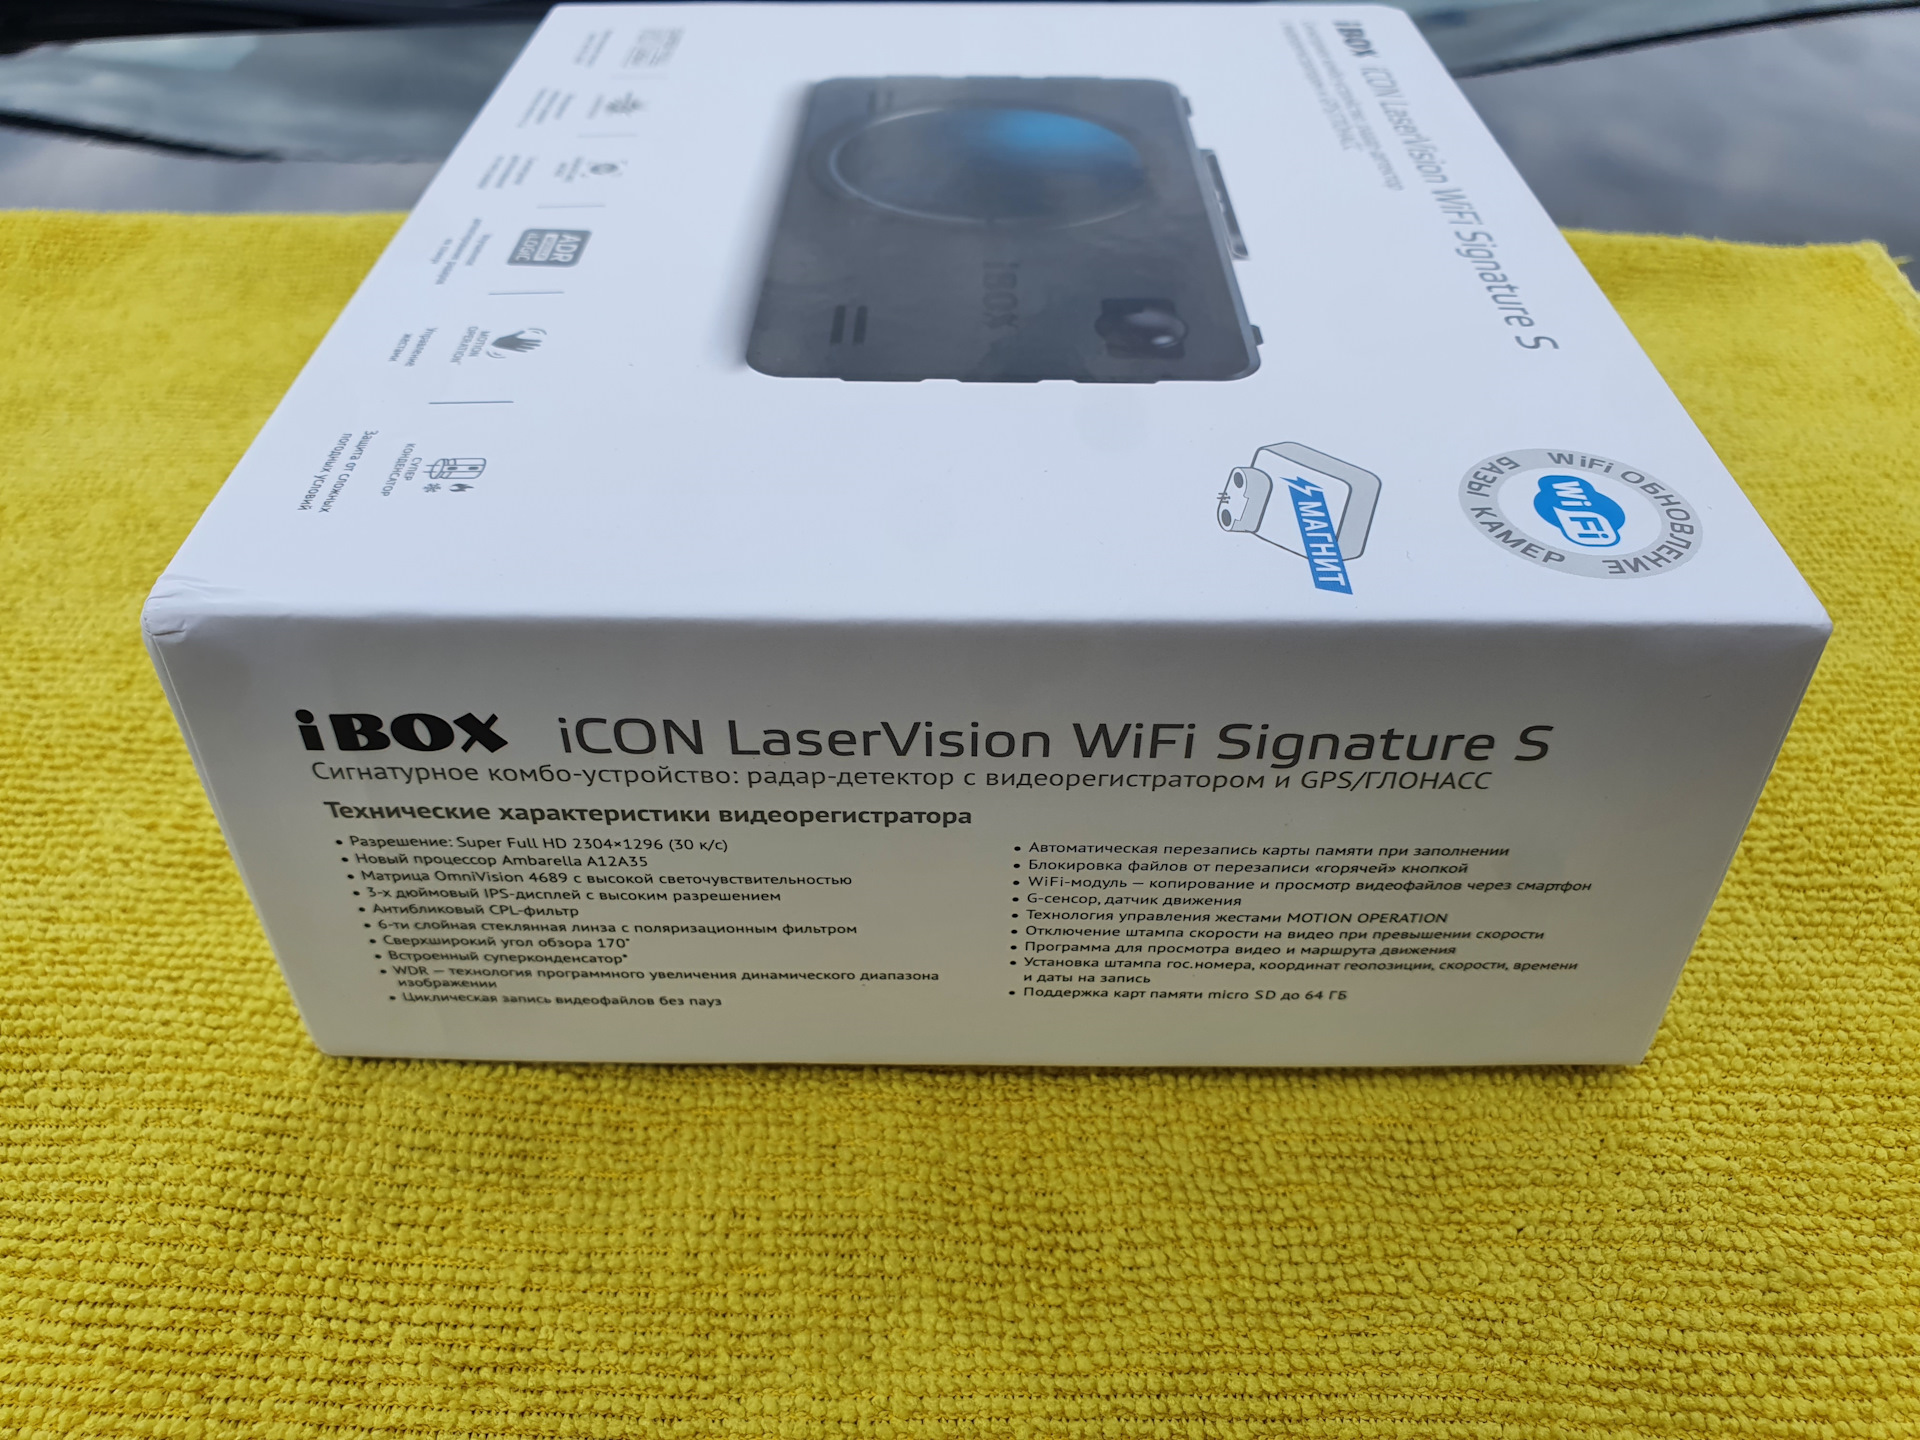 Видеорегистратор ibox icon laservision wifi. IBOX icon Laser Vision WIFI Signature Dual. IBOX Laser Vision WIFI Signature s. IBOX icon laservision WIFI Signature. IBOX one Laser Vision Wi Fi Signature.